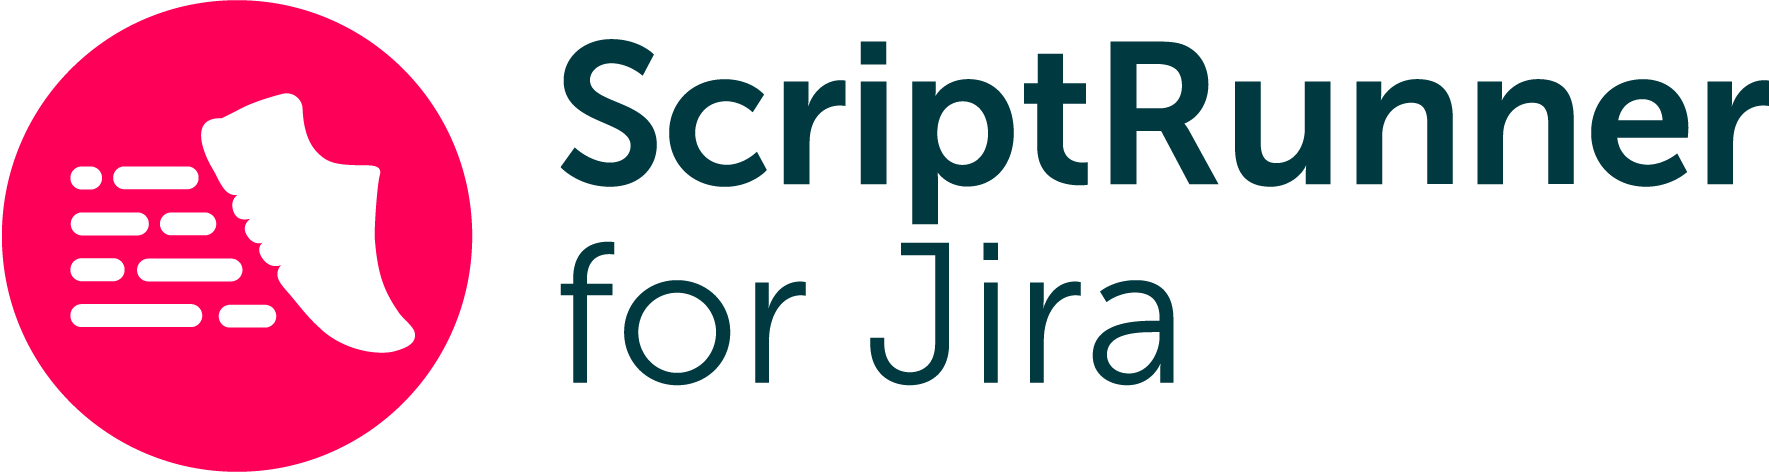 scriptrunner-for-jira-dark-text